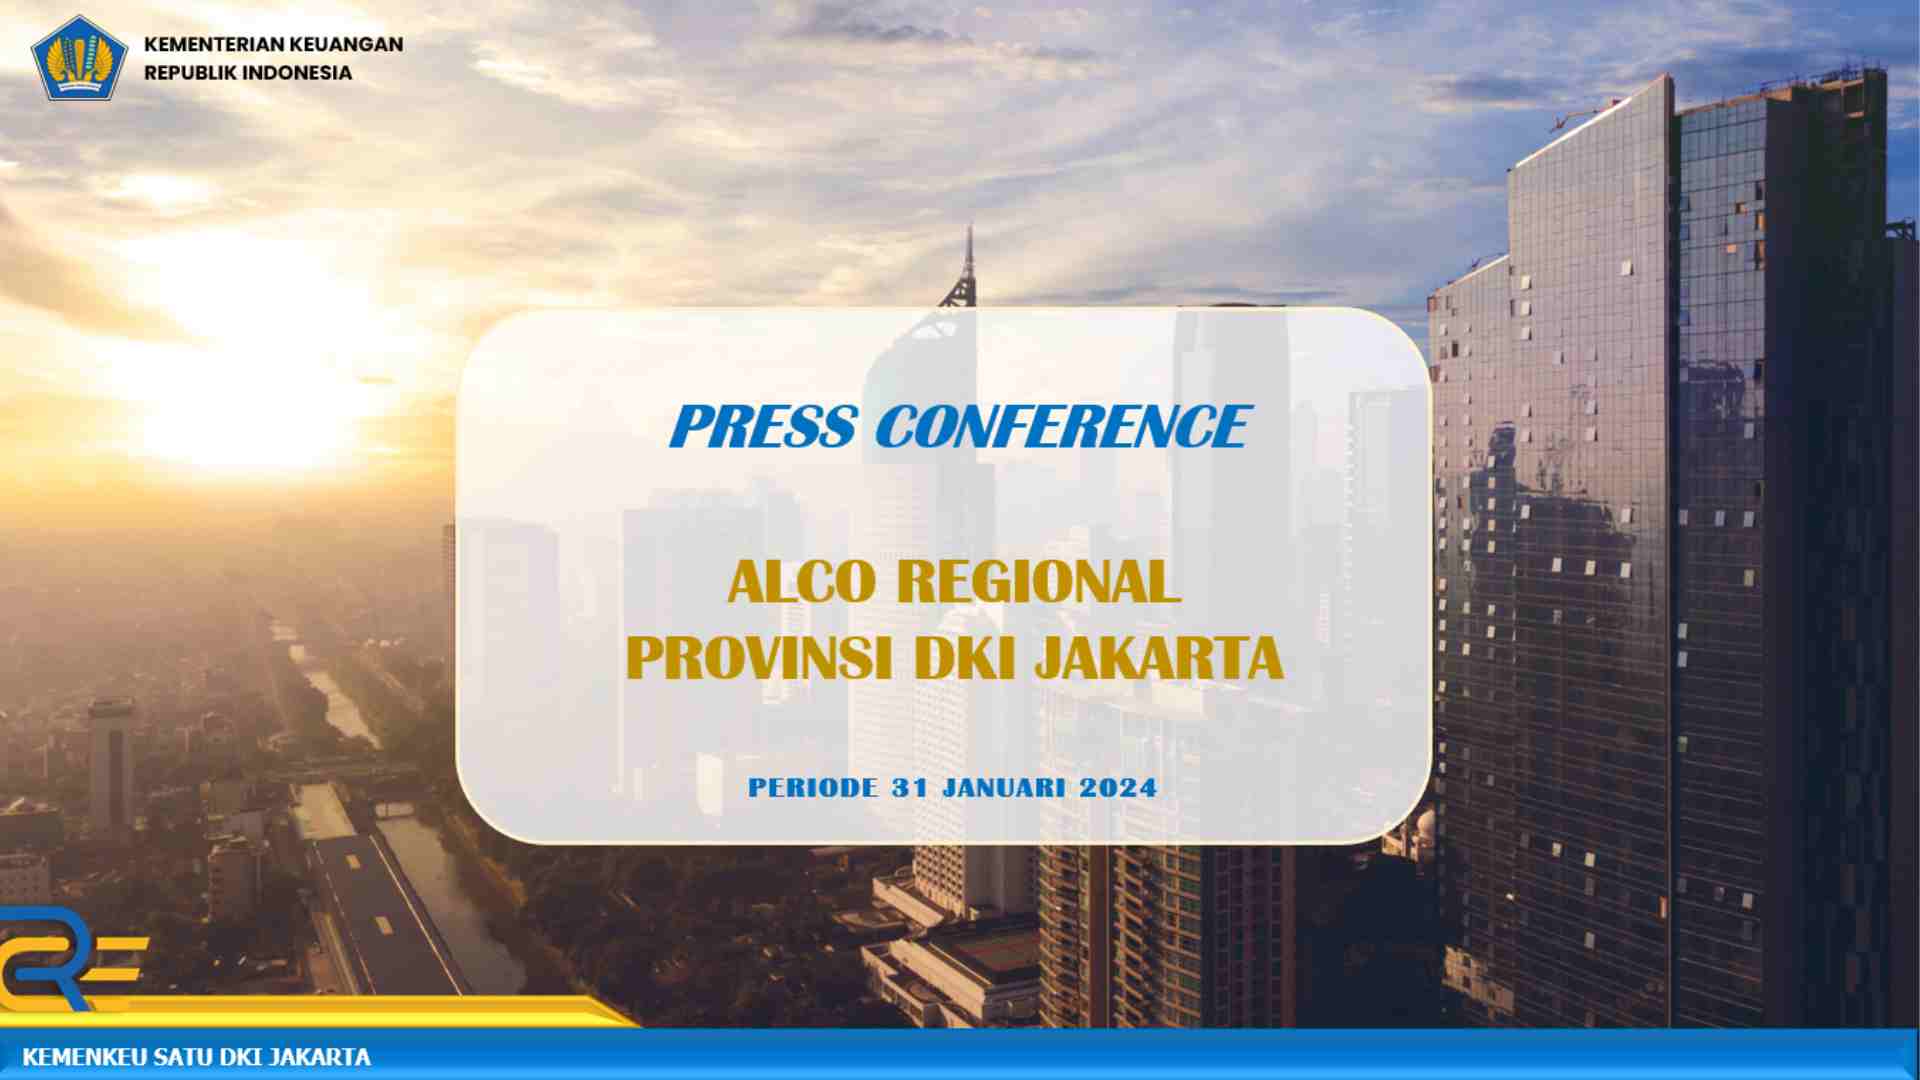 Press Conference Kinerja APBN Kita Wilayah Provinsi DKI Jakarta sampai dengan 31 Januari 2024